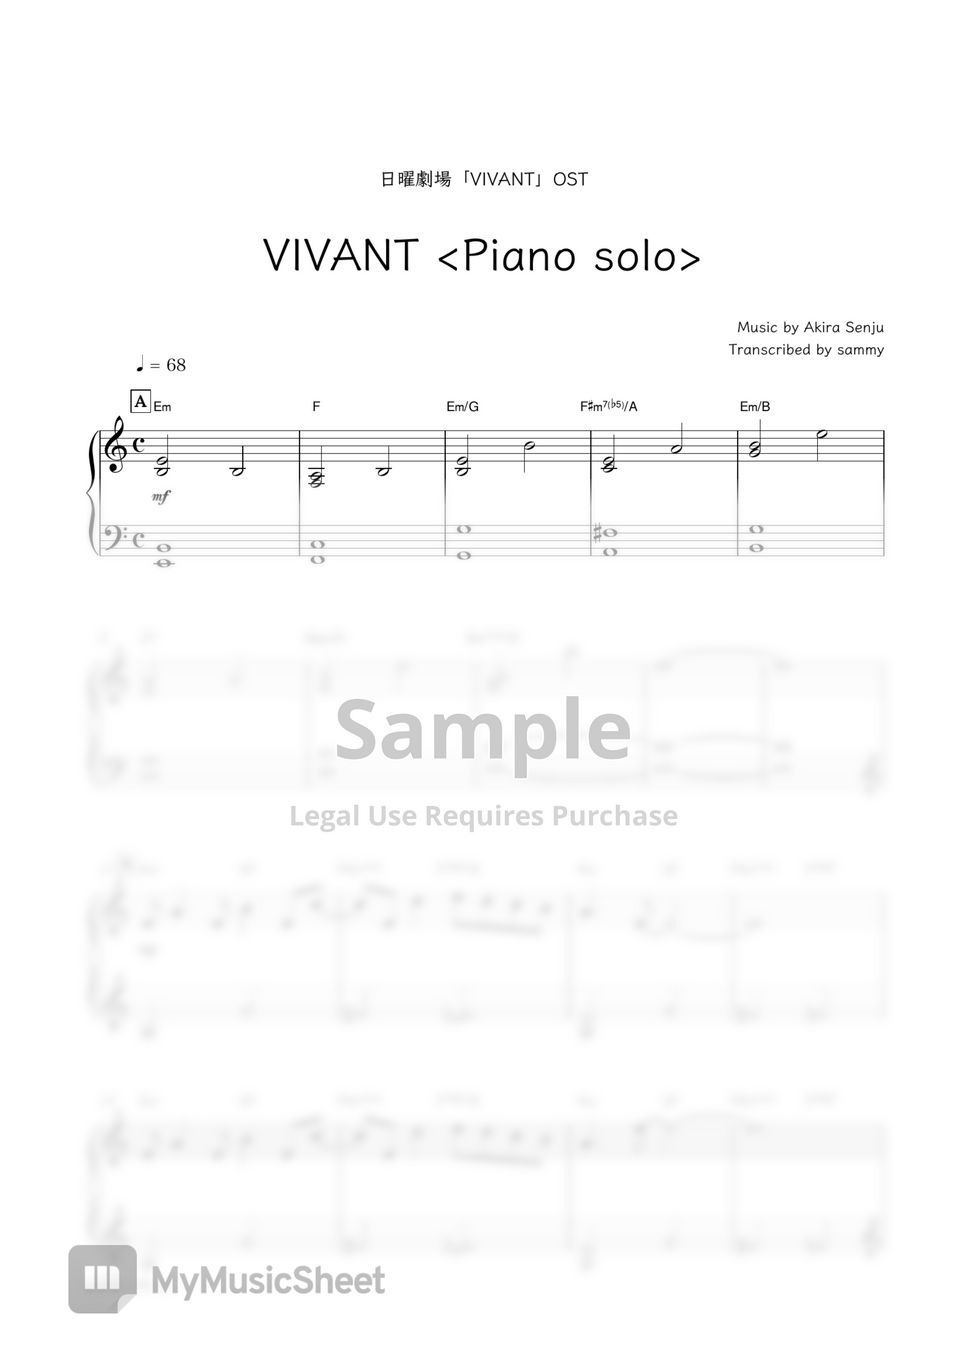 Japanese TV series  "VIVANT"OST・Akira Senju - VIVANT <Piano solo> by sammy